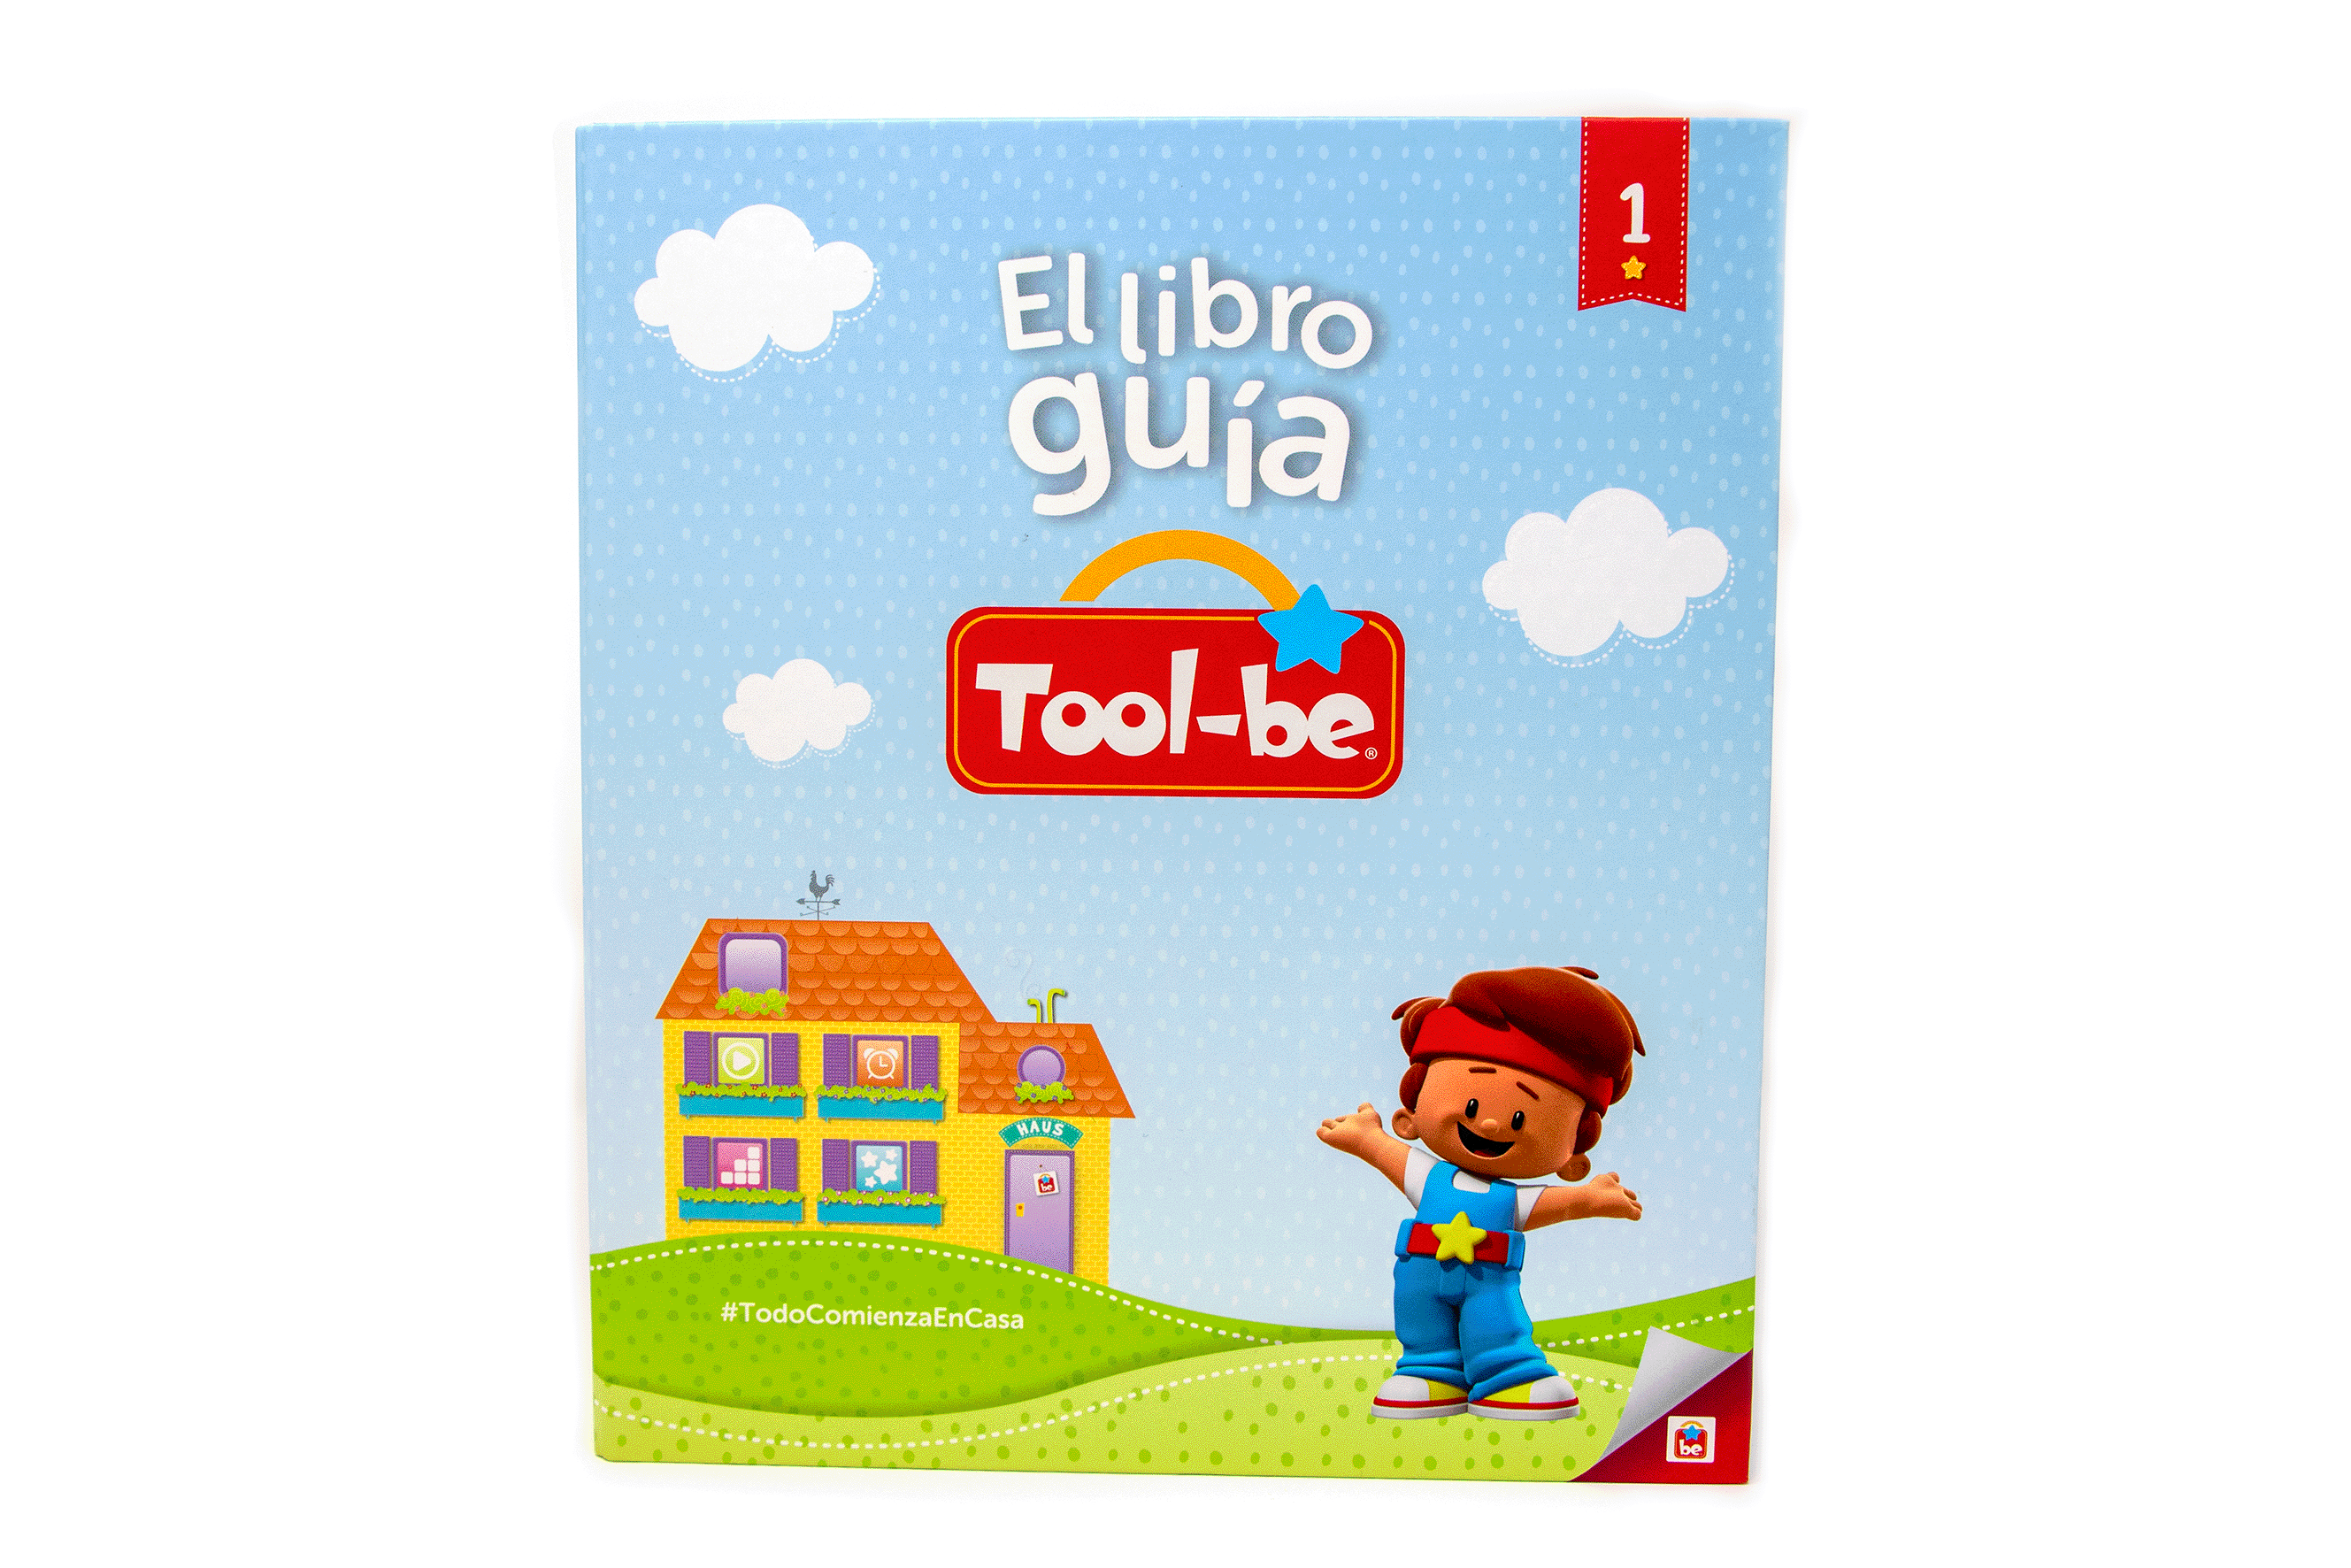 Folder El Libro Guía de Tool-be - Tool-be